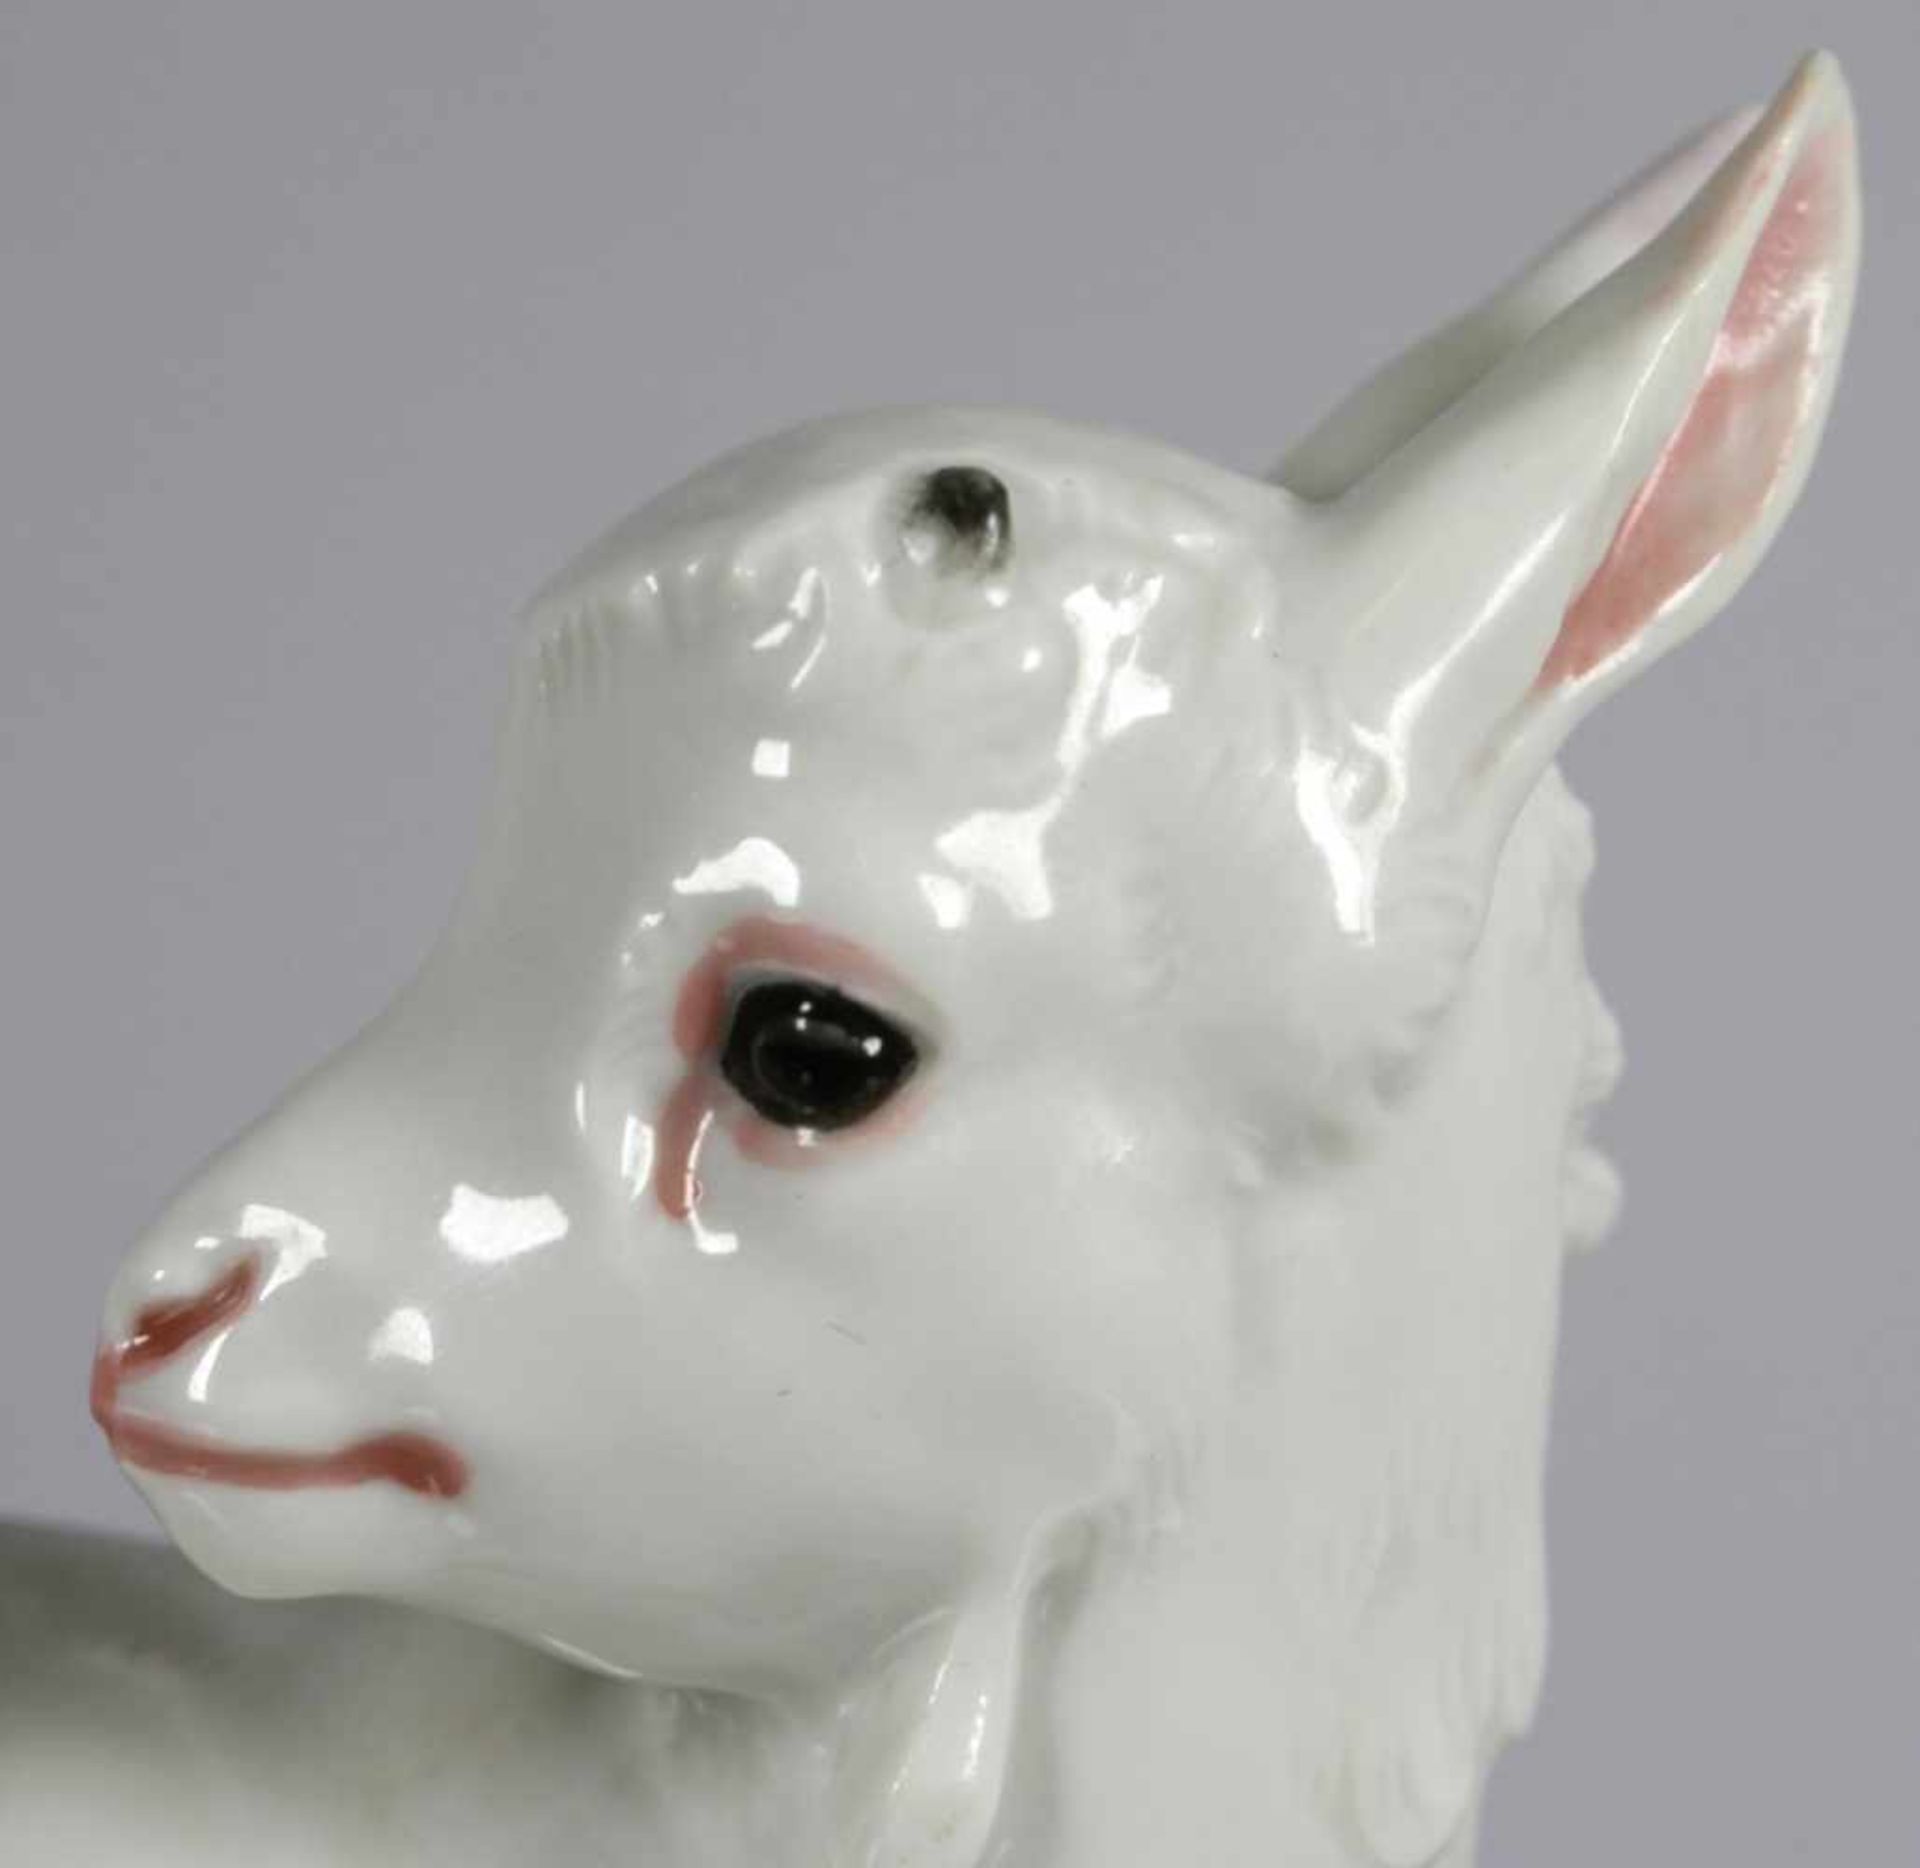 Porzellan-Tierplastik, "Zicklein", Porzellan-Manufaktur Allach, Allach bei München, um1938-45, - Bild 2 aus 4